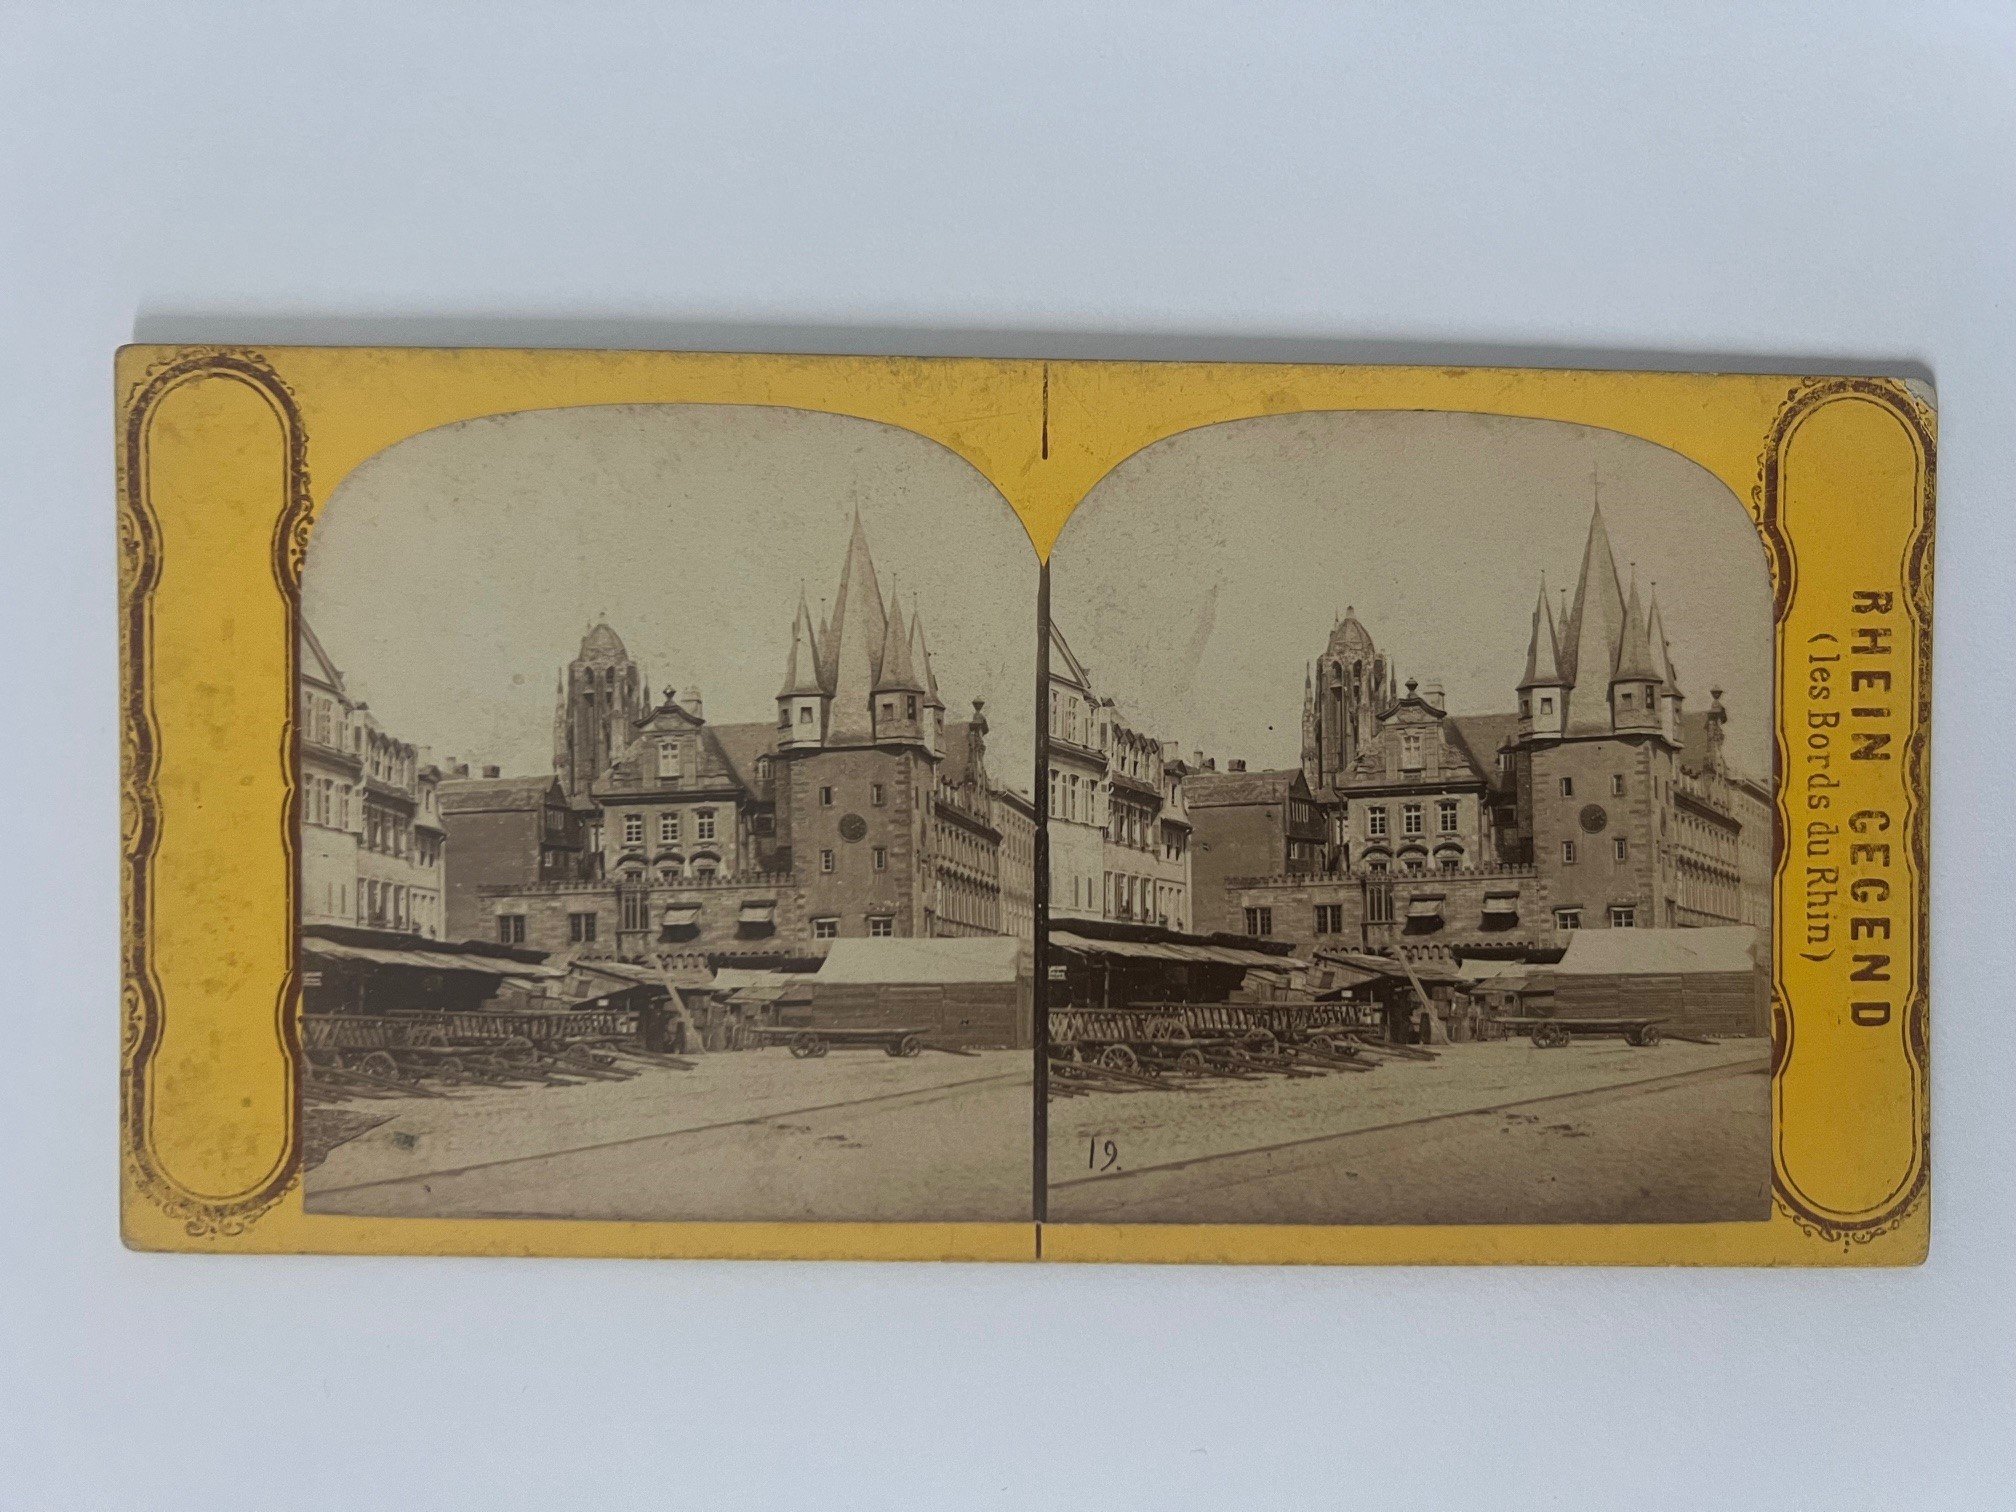 Stereobild, Unbekannter Fotograf, Frankfurt, Rententurm, ca. 1876. (Taunus-Rhein-Main - Regionalgeschichtliche Sammlung Dr. Stefan Naas CC BY-NC-SA)